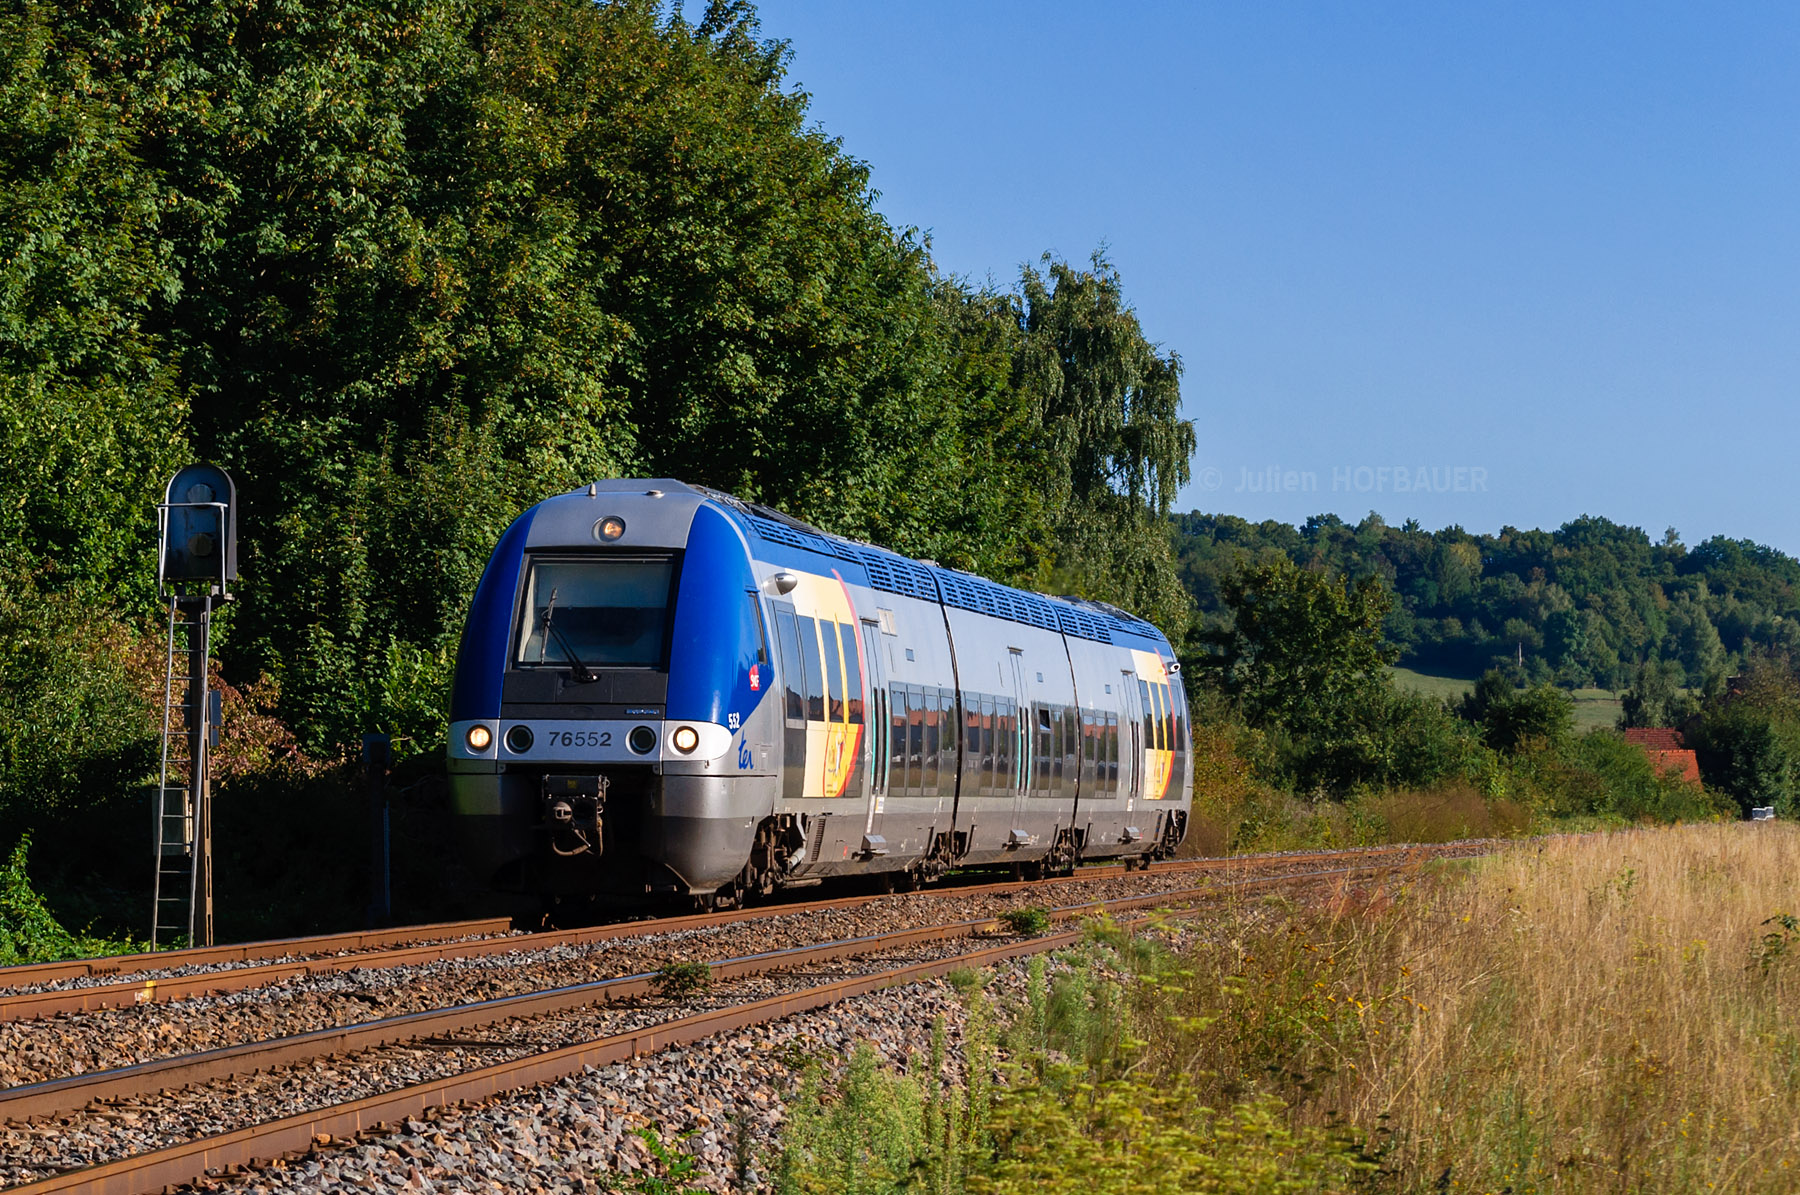 Le XGC X 76552 en charge du TER 834922 reliant Sarre-Union à Sarreguemines vient tout juste de desservir la gare de Zetting en Moselle.